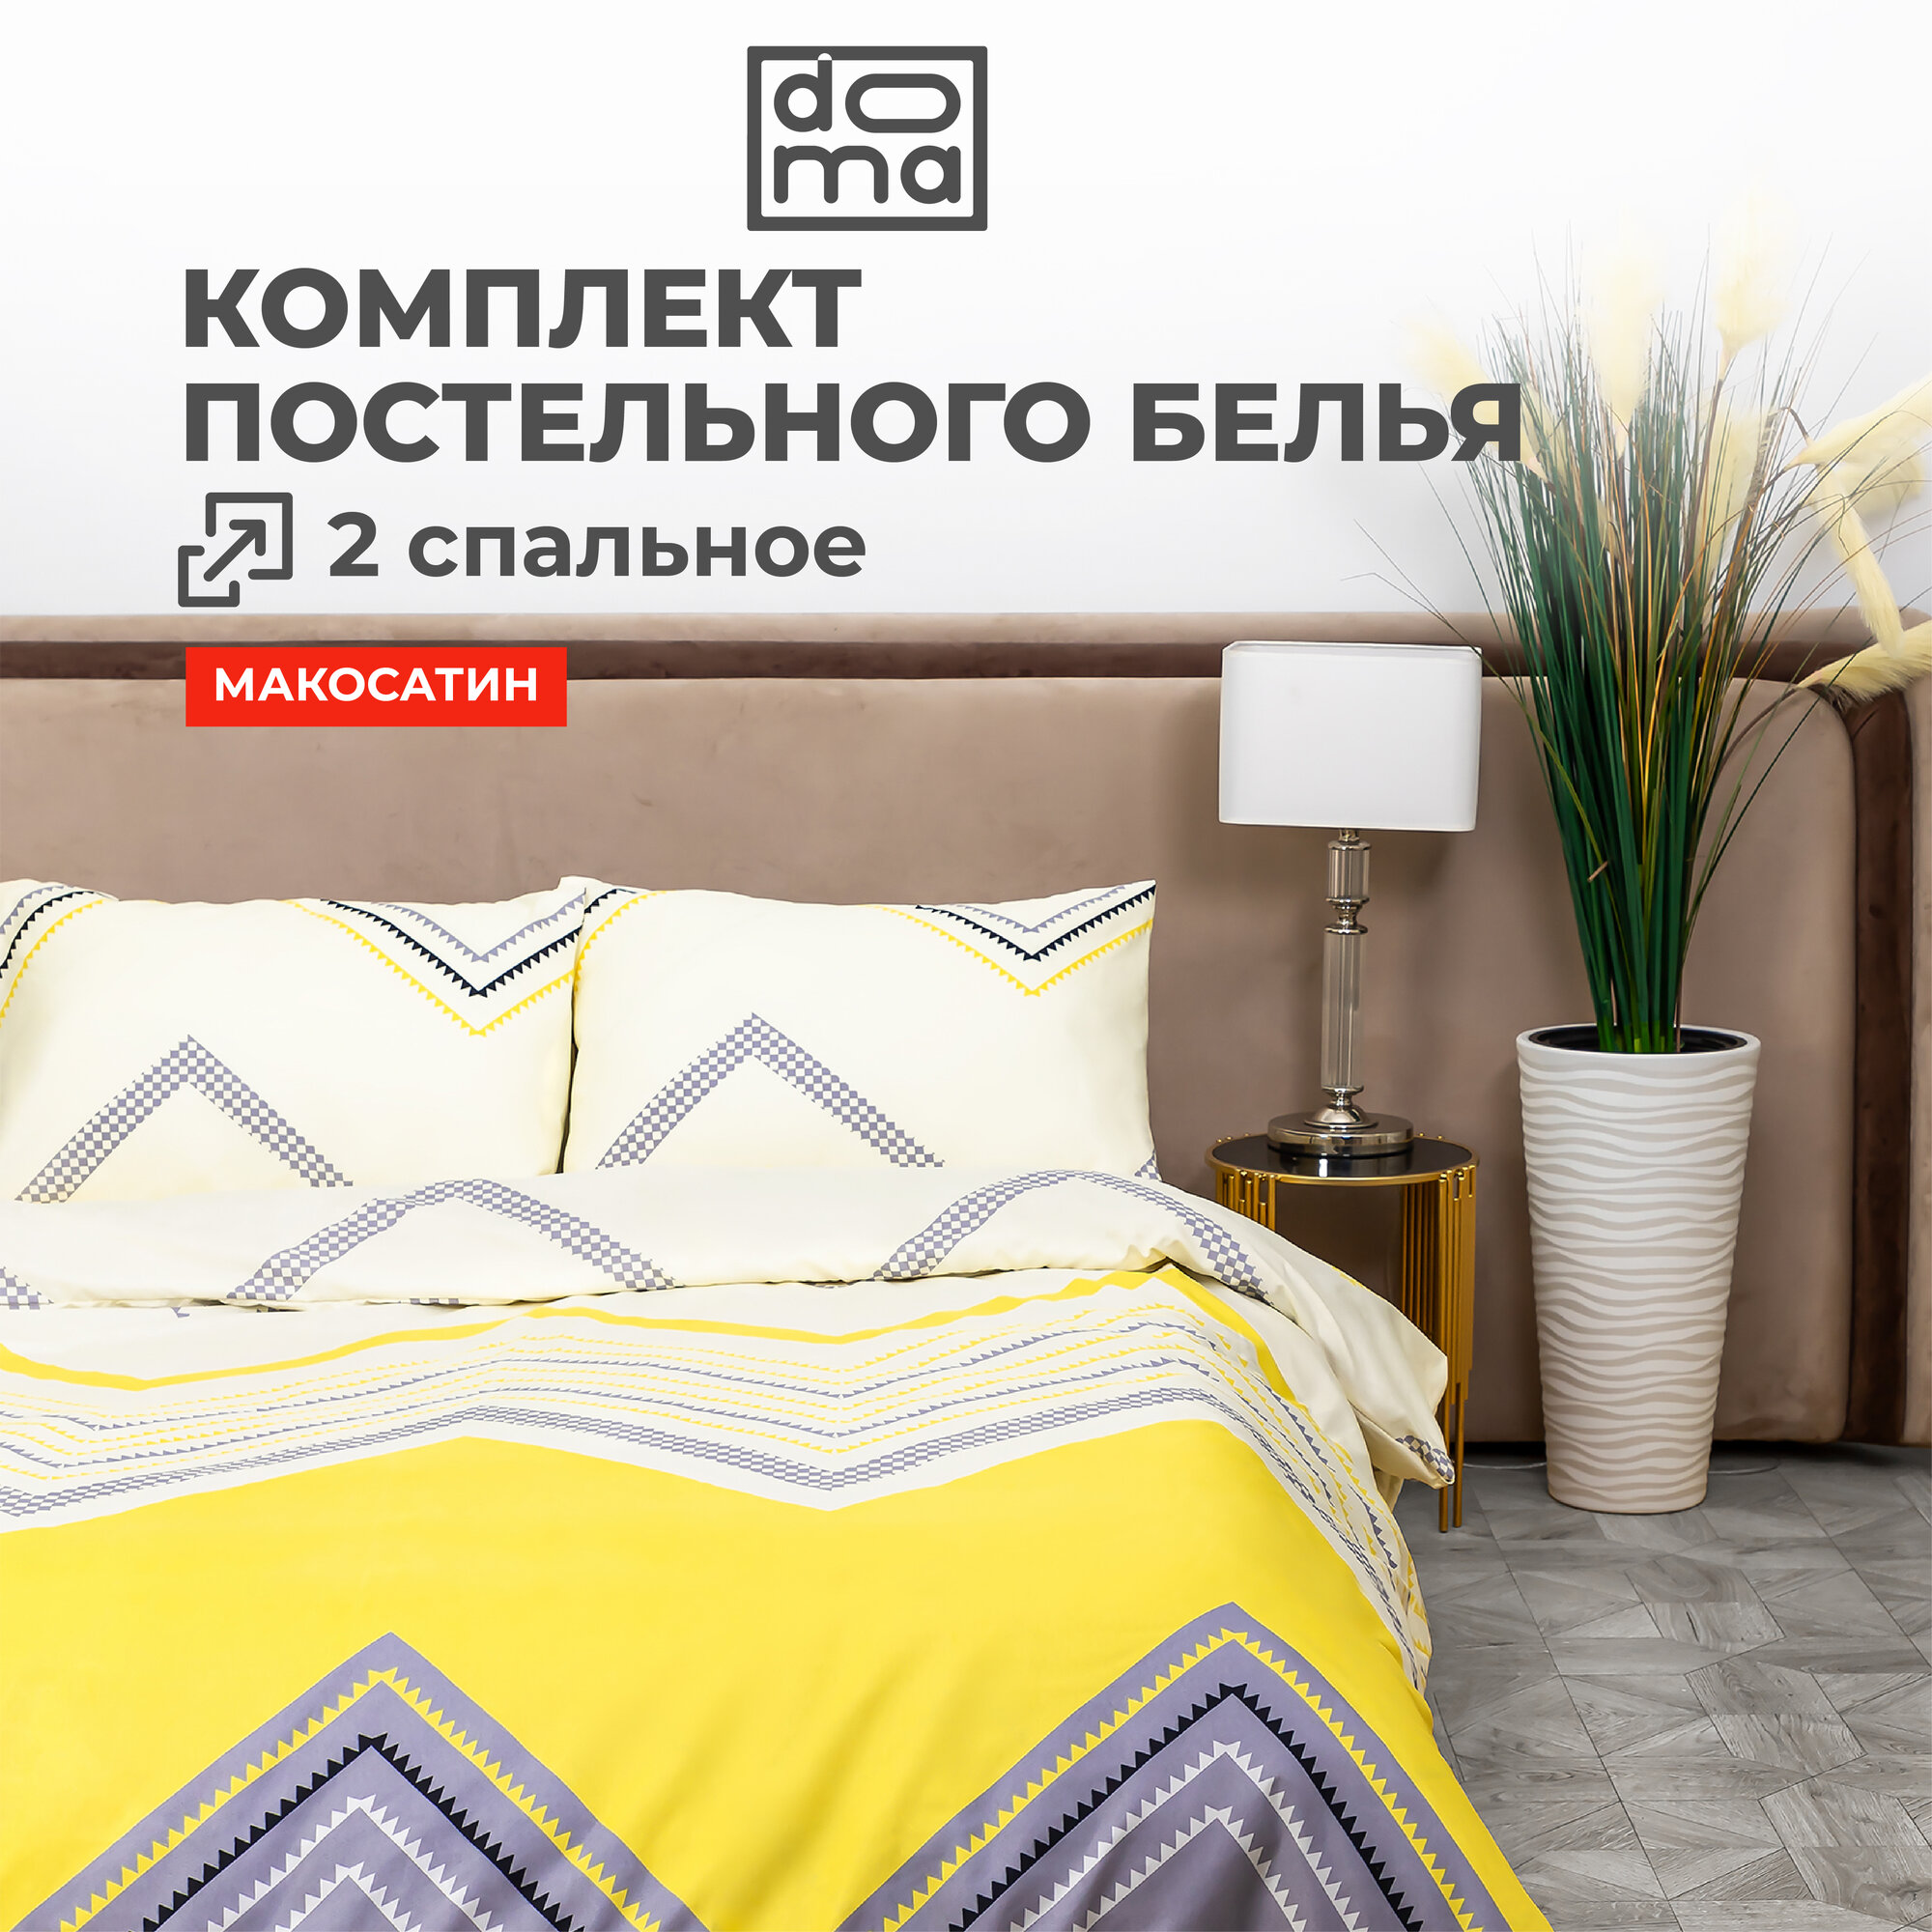 Комплект постельного белья Doma Kuban микрофибра 2 сп